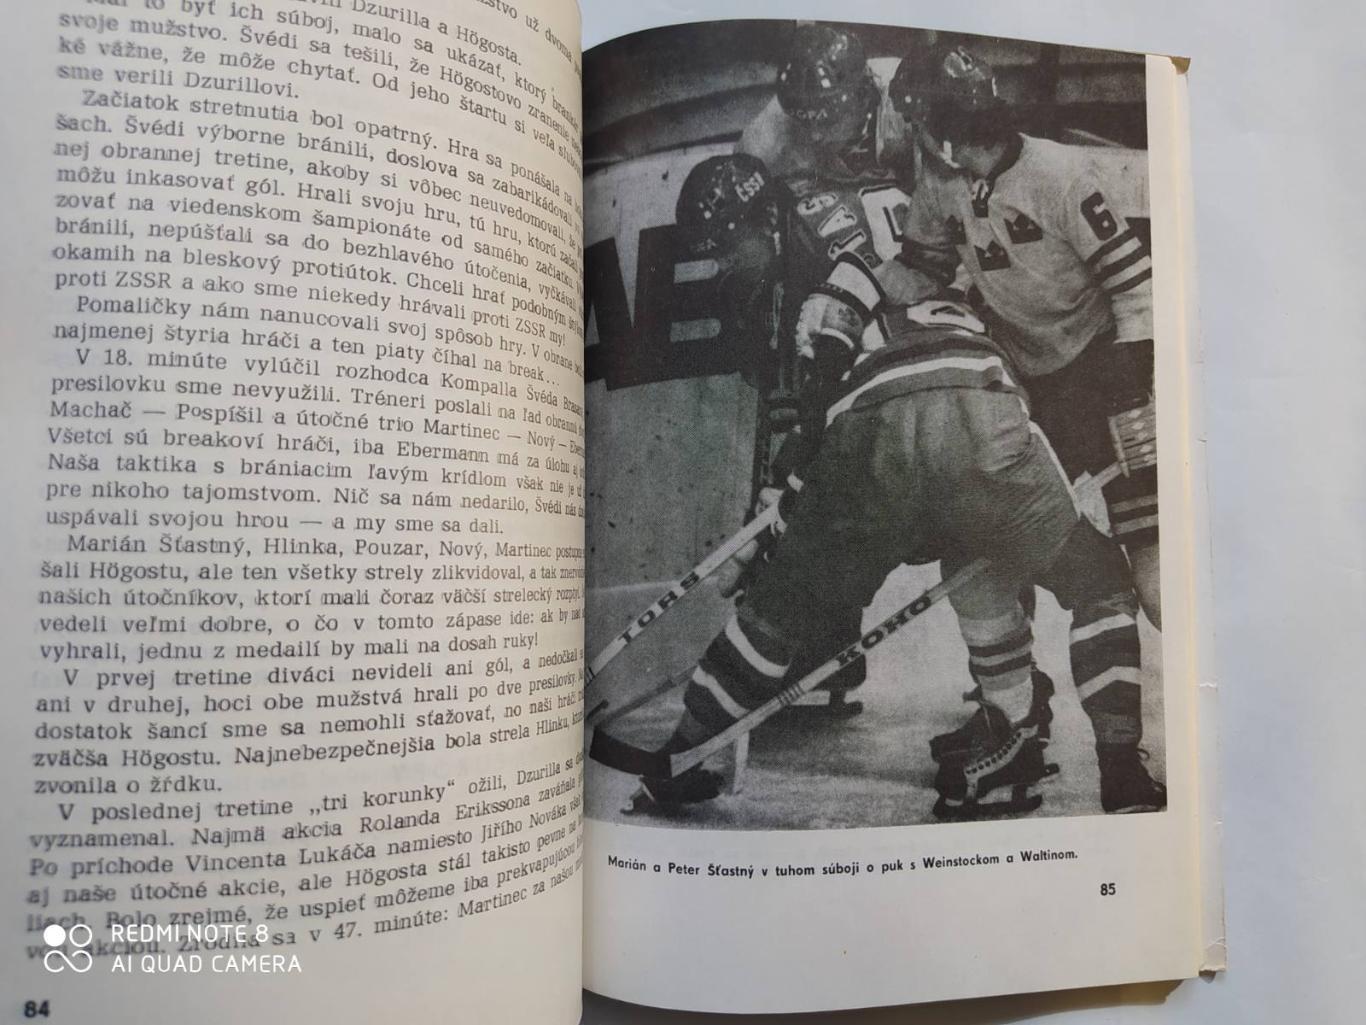 Vlado Malec VIEDEN HOKEJ 1977 Хоккей Вена 1977 год 3